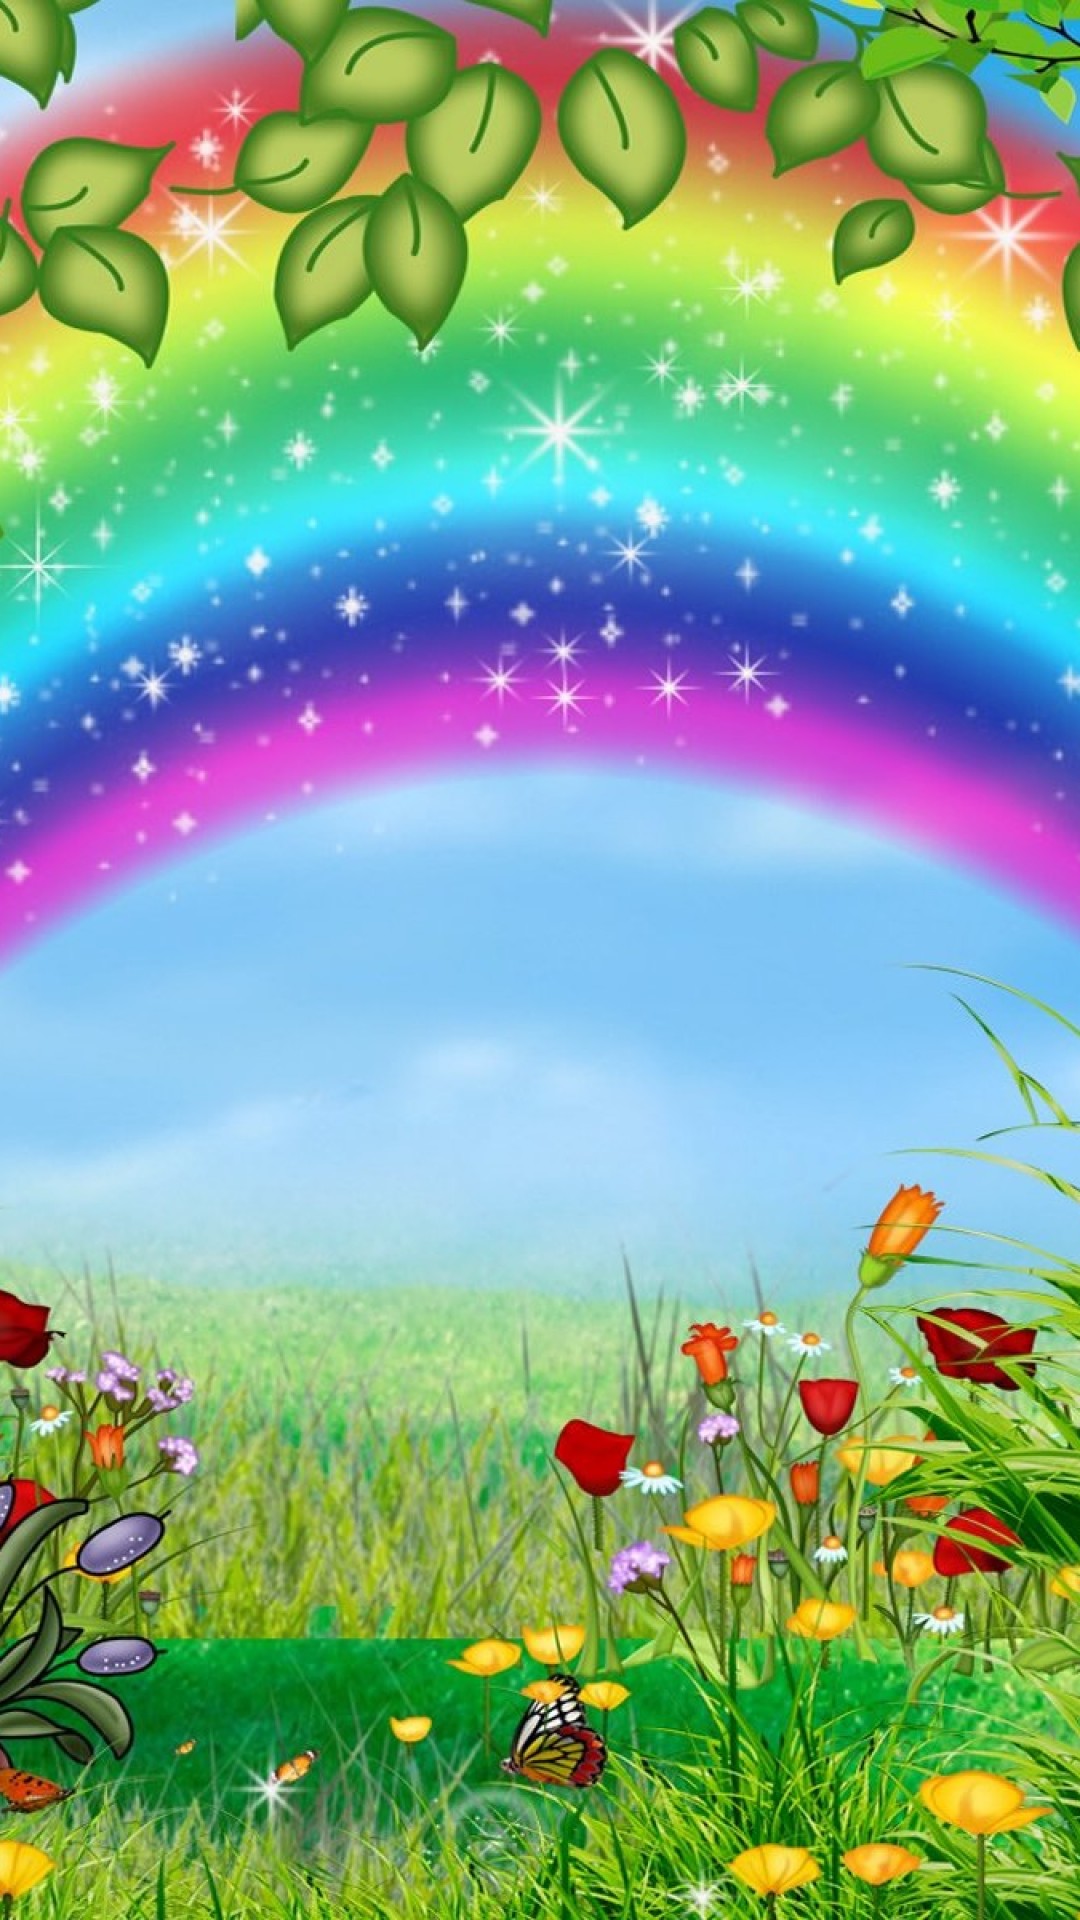 美しい虹の絵 かわいいiphone壁紙 Iphone14 スマホ壁紙 待受画像ギャラリー